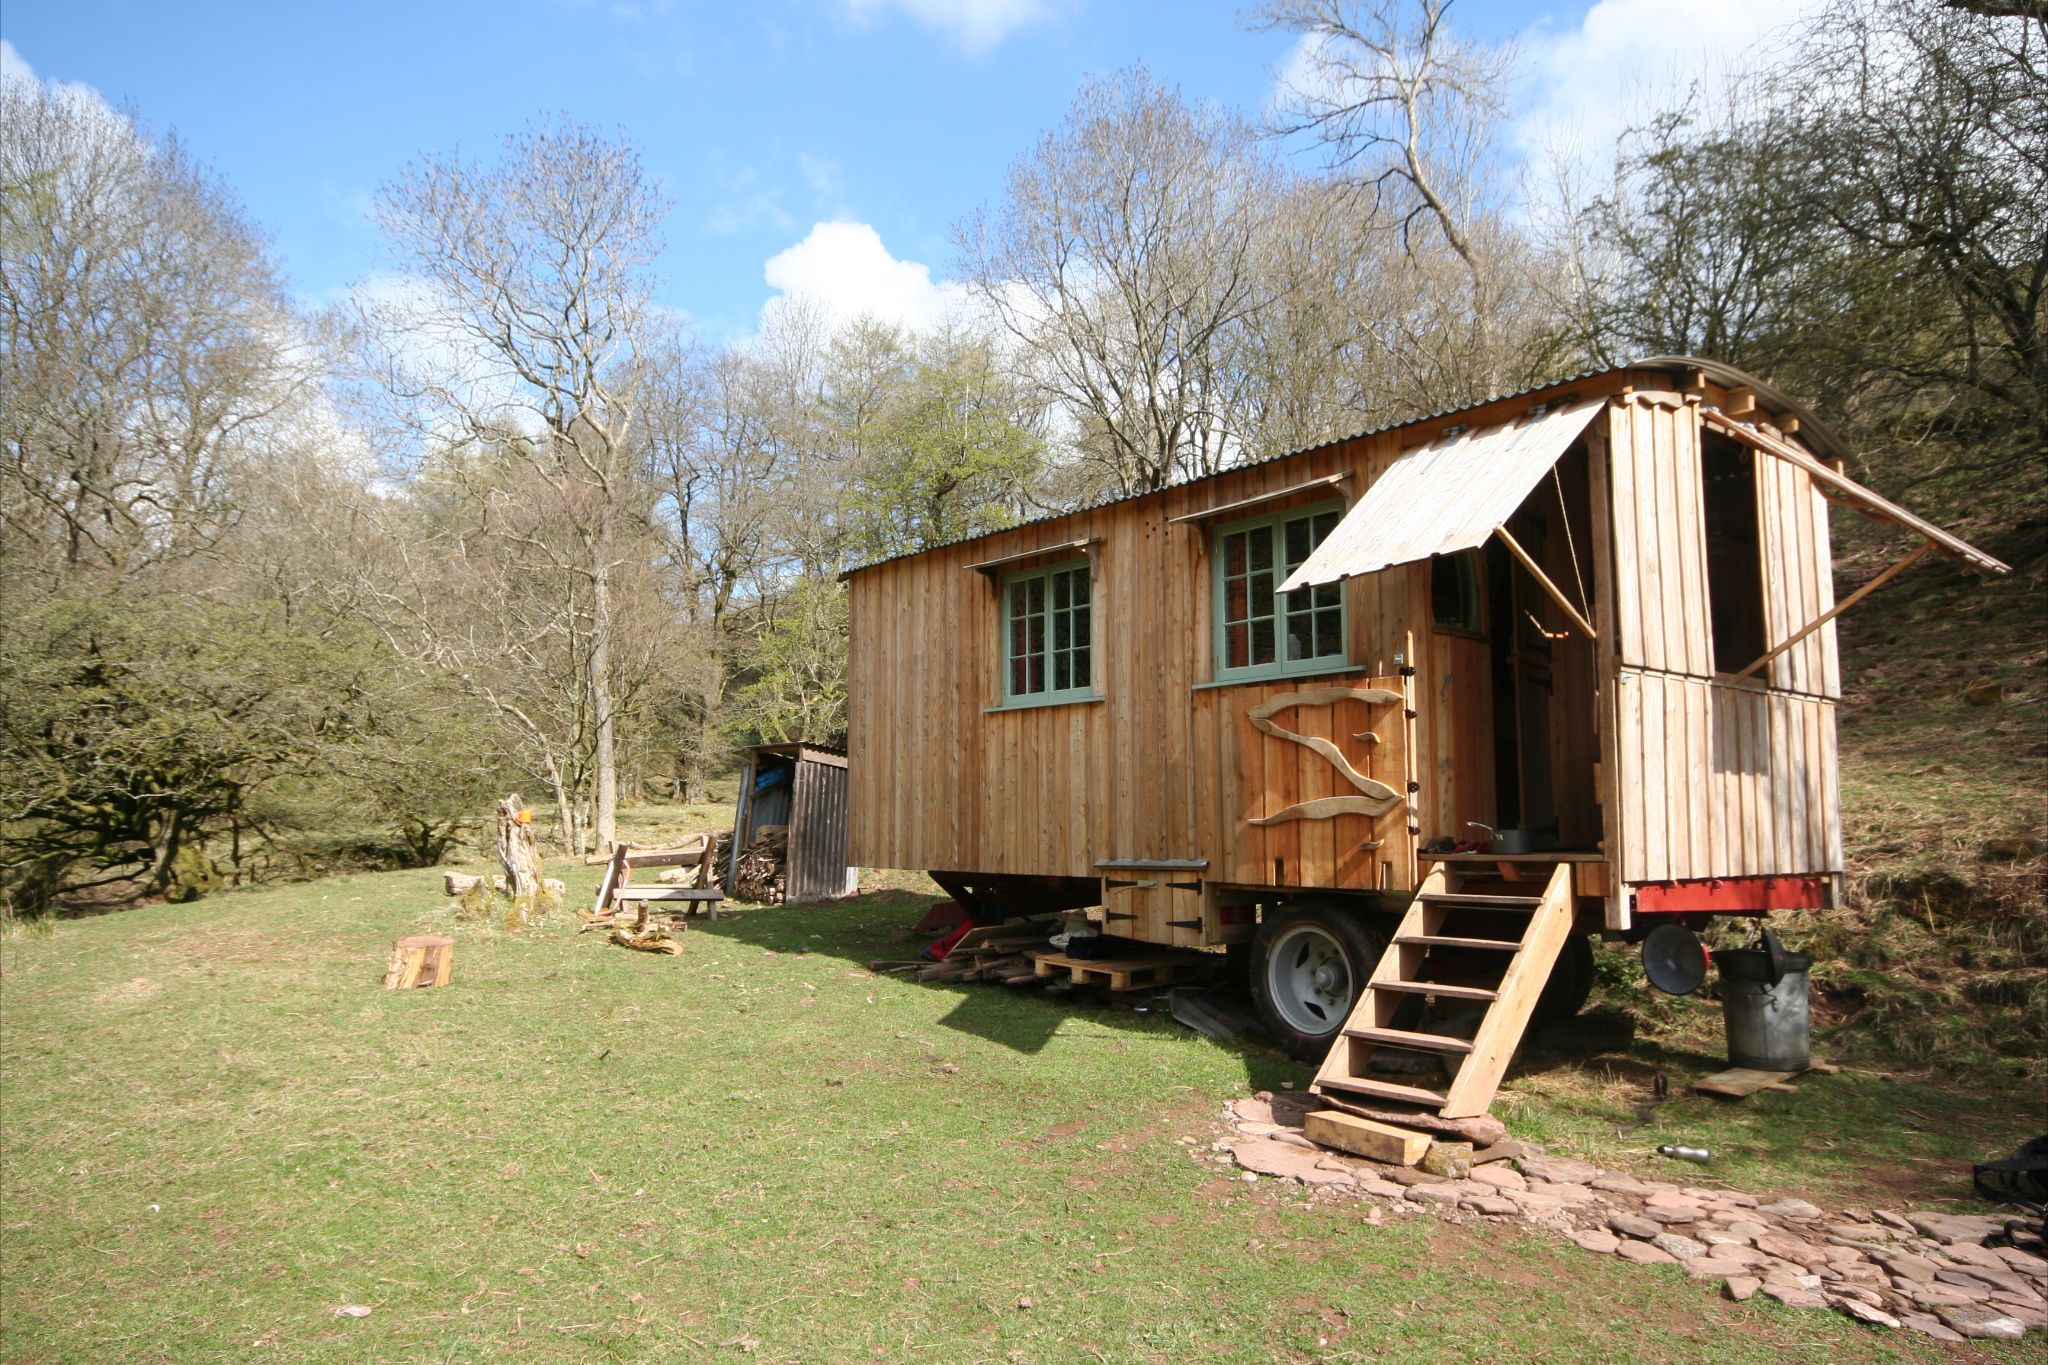 Gwennol, Powys - a rustic wooden cabin | Caravan / Trailer ...